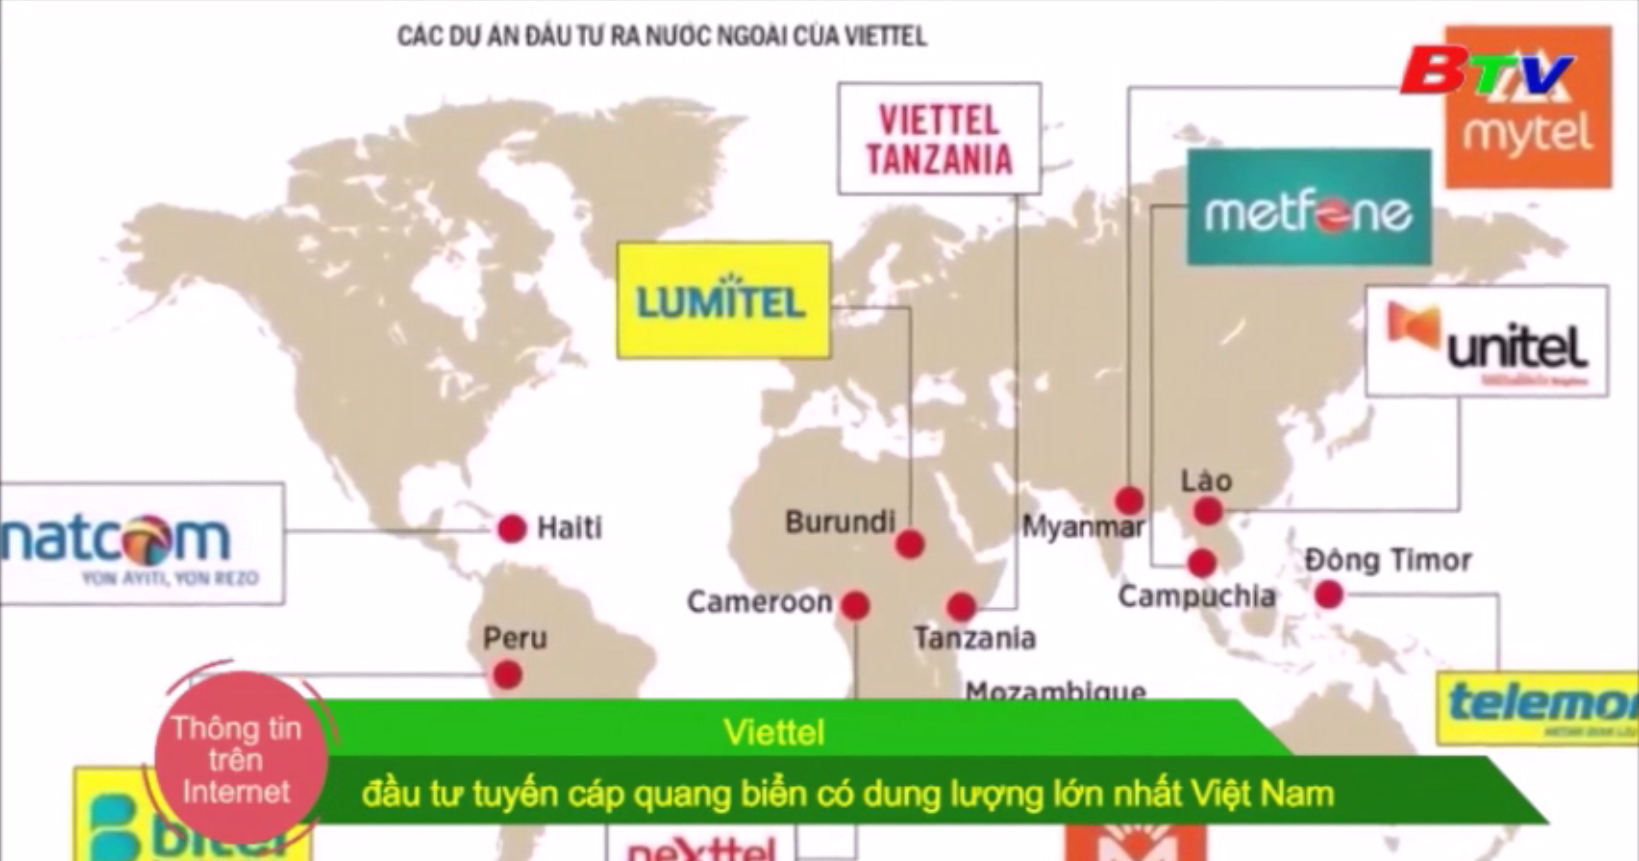 Viettel đầu tư tuyến cáp quang biển có dung lượng lớn nhất Việt Nam